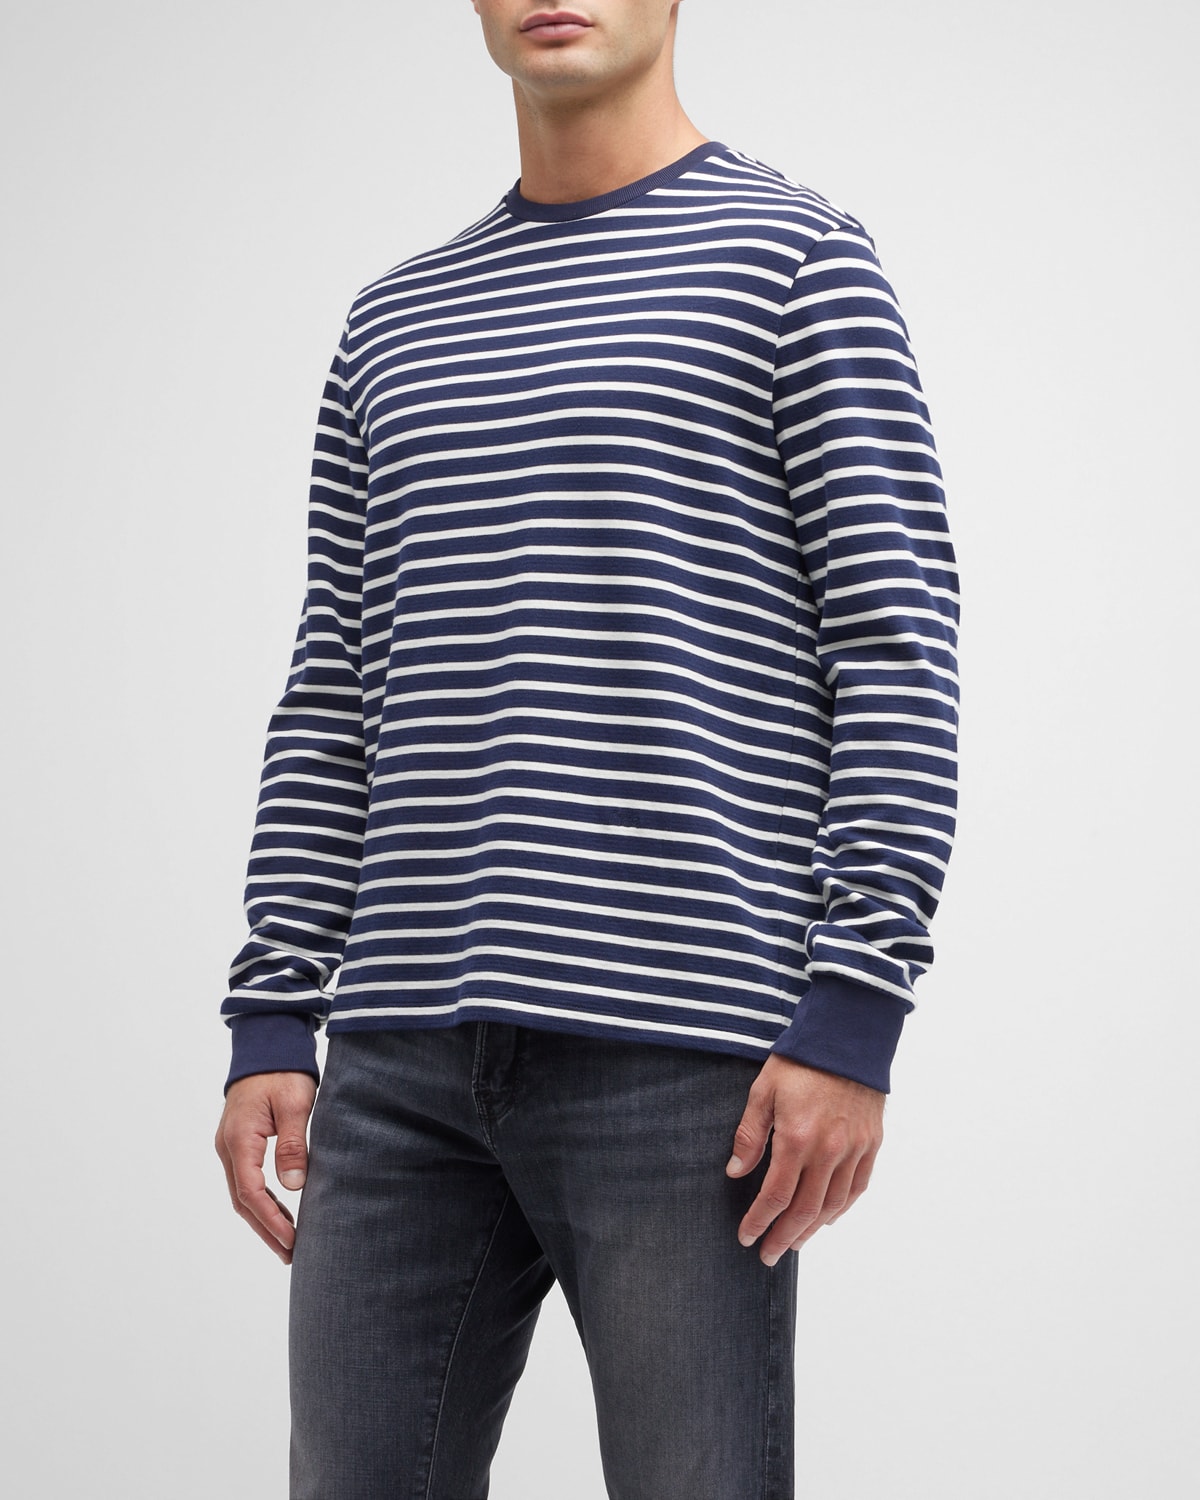 Men's Duofold Striped T-Shirt